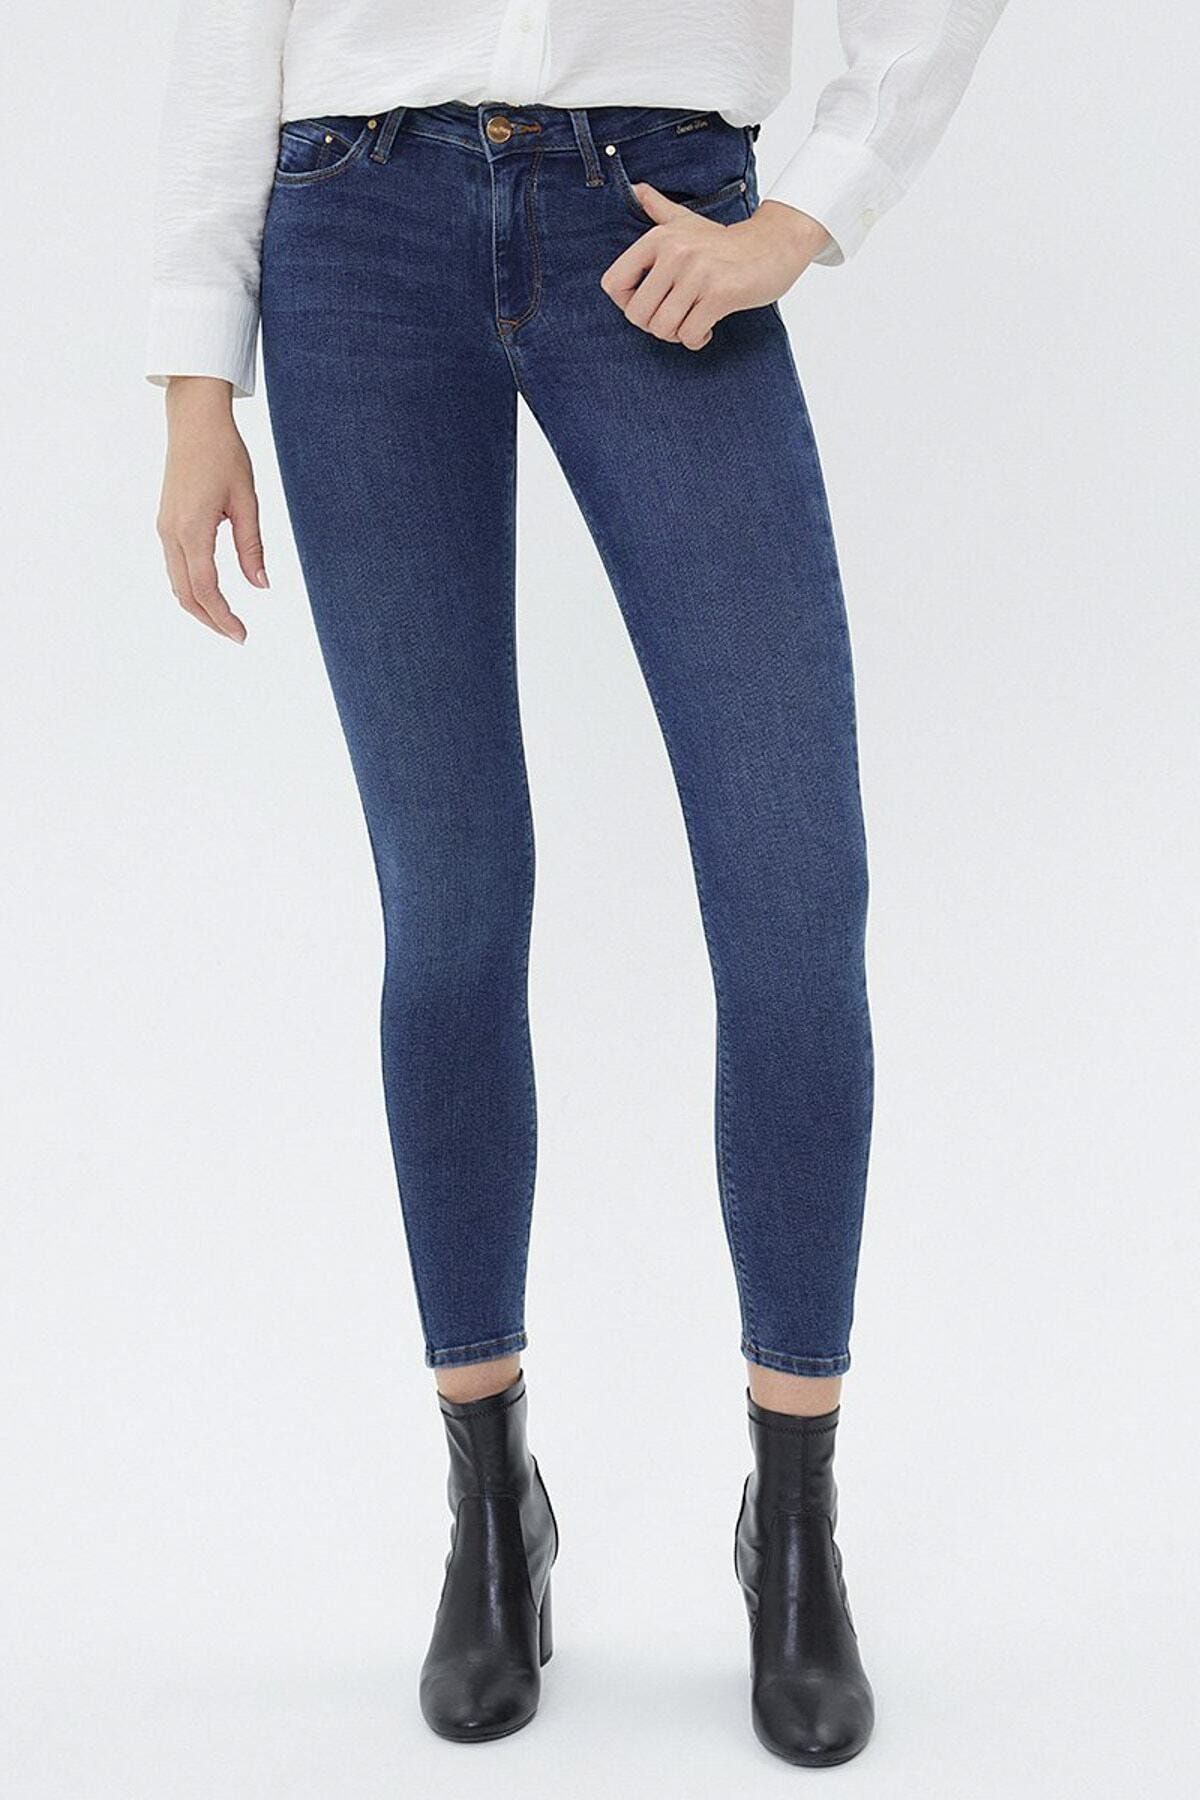 Loft Kadın Mavi Orta Bel Skinny Fit Jeans